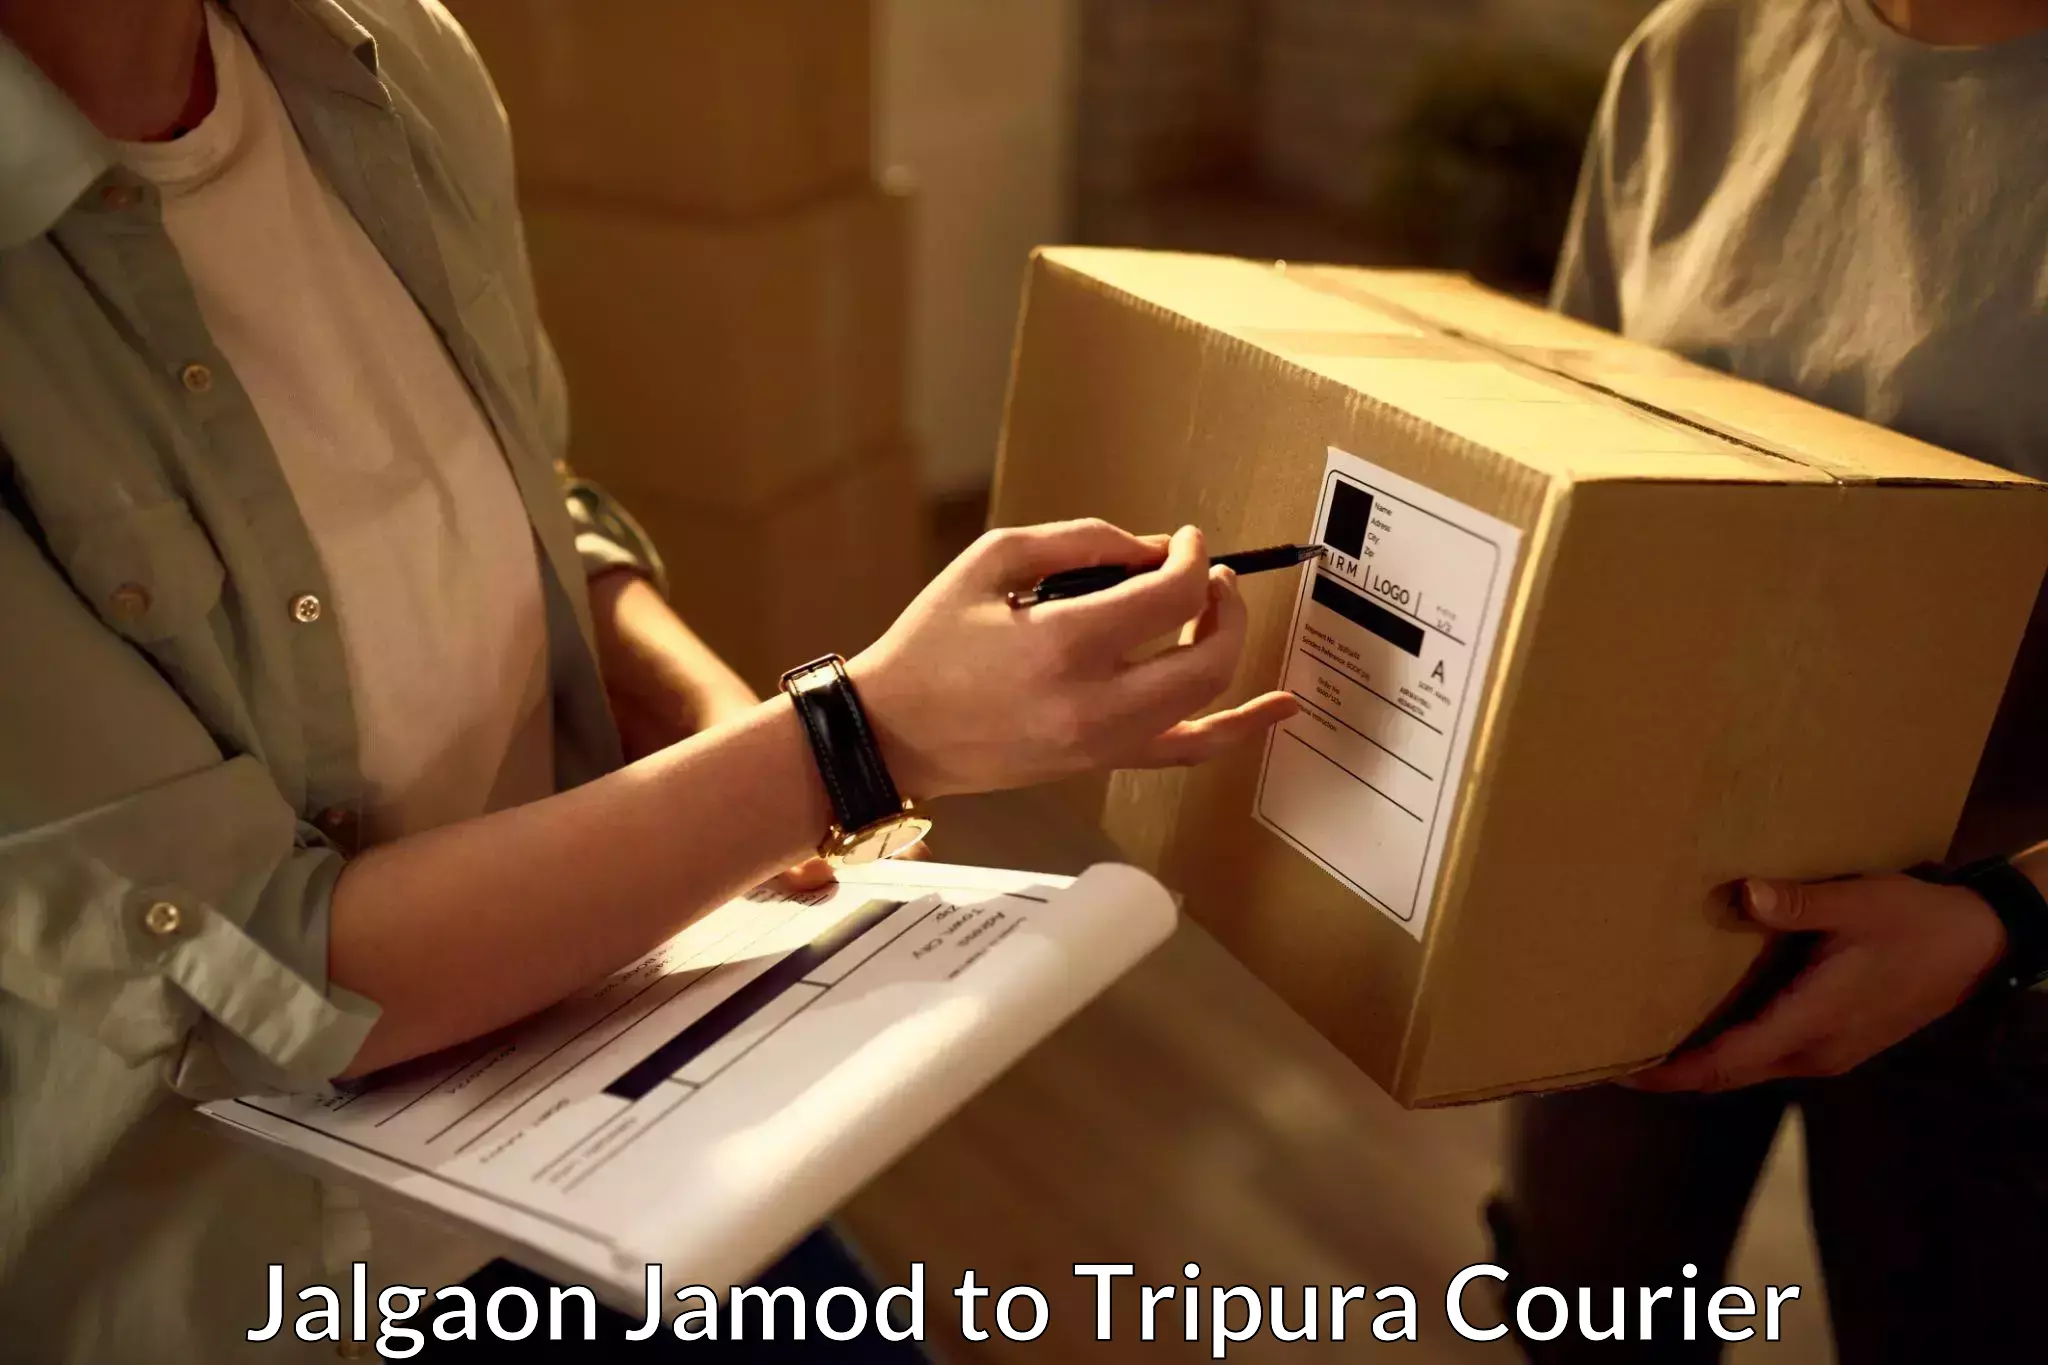 Next-day freight services Jalgaon Jamod to Tripura